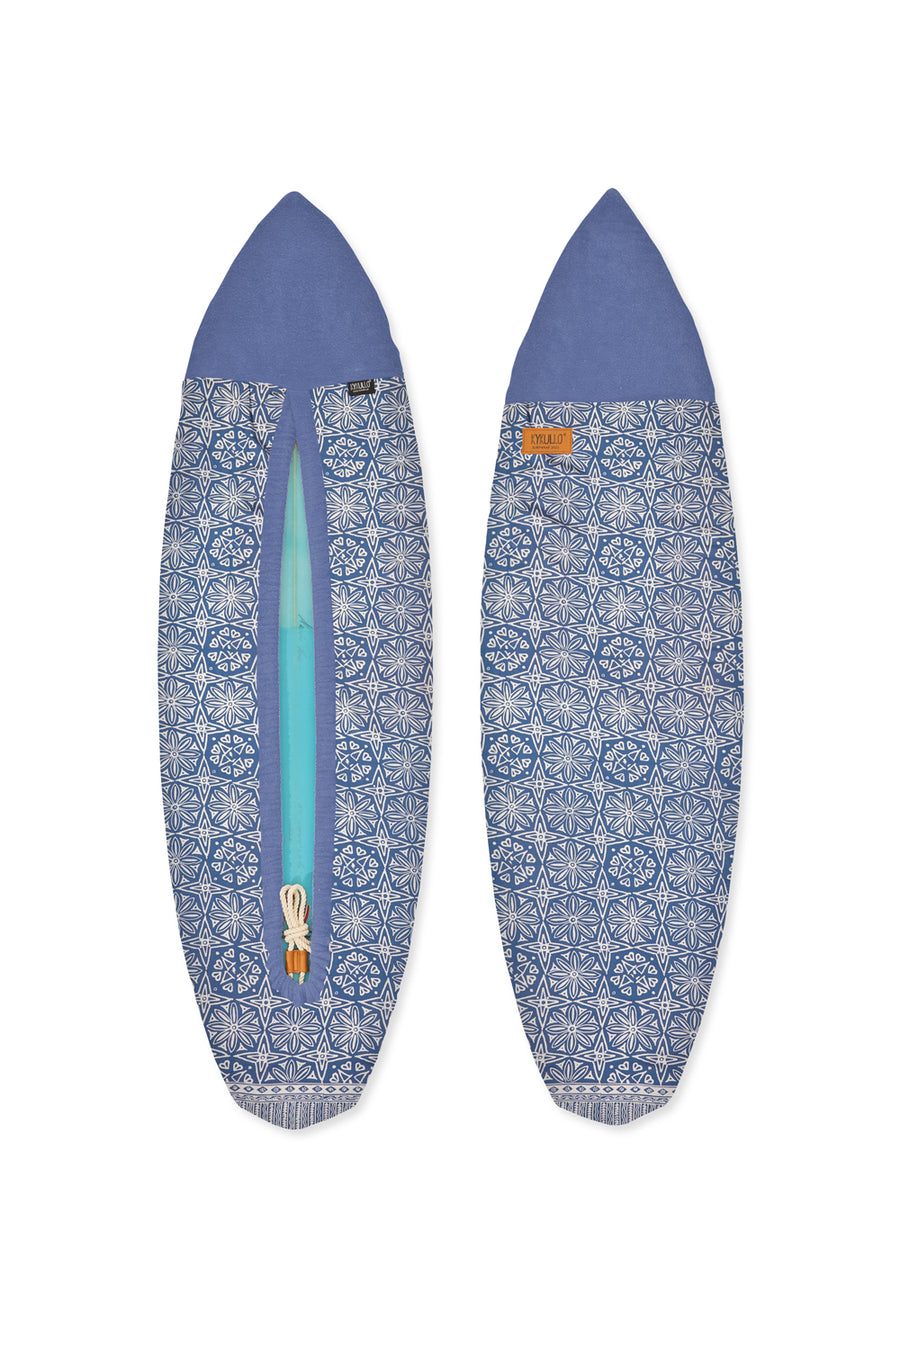 SURFWRAP 5'10 - HORIZON